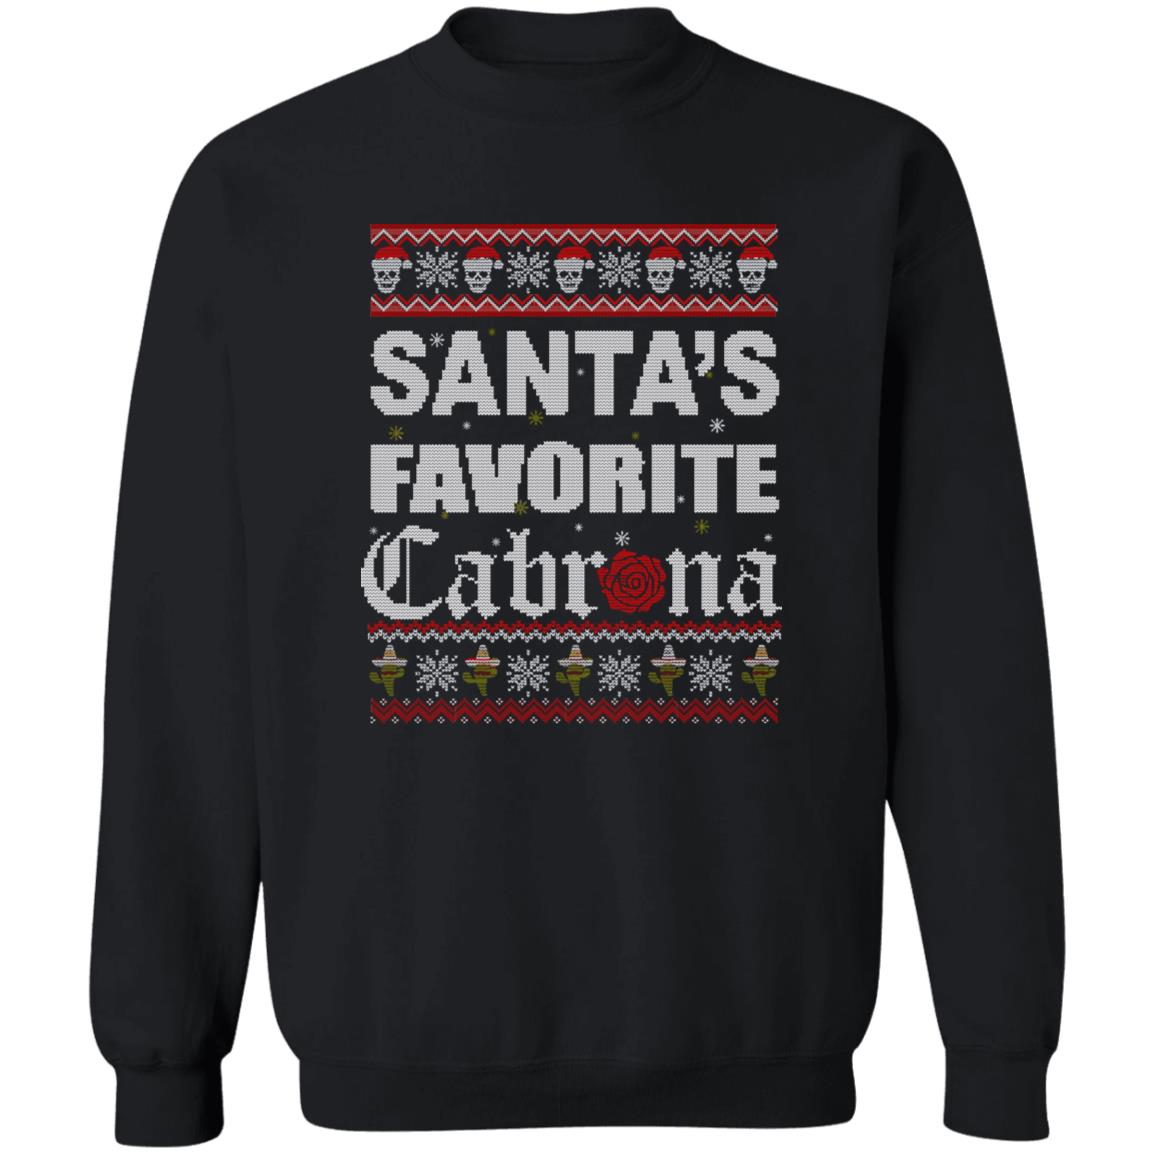 Santa’s Favorite Cabrona Christmas Sweater